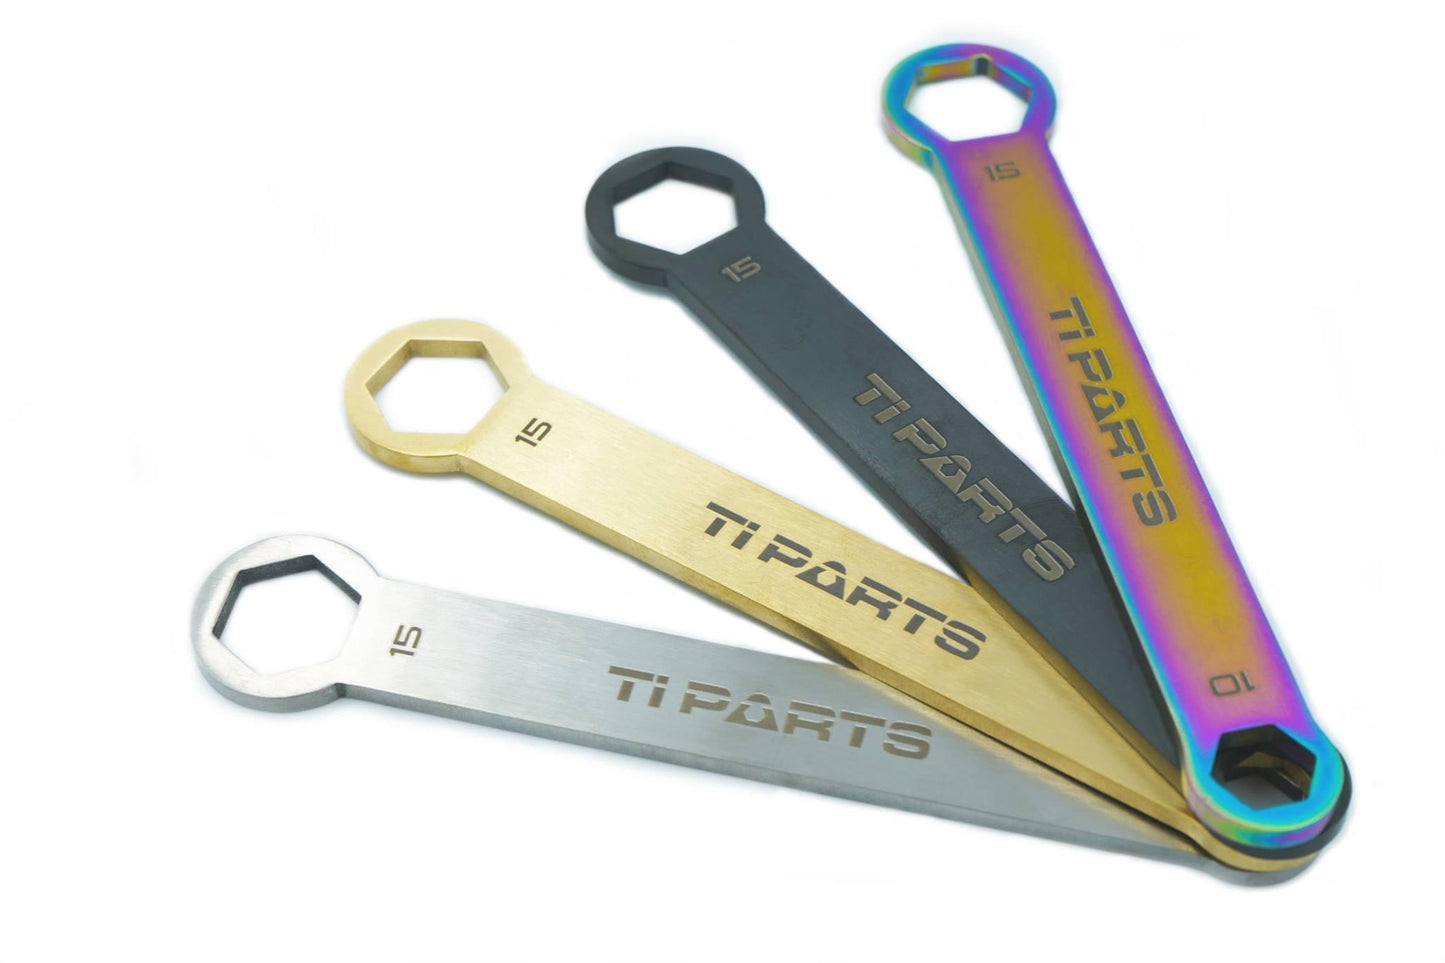 Tipartsworkshop Titanium Wrench